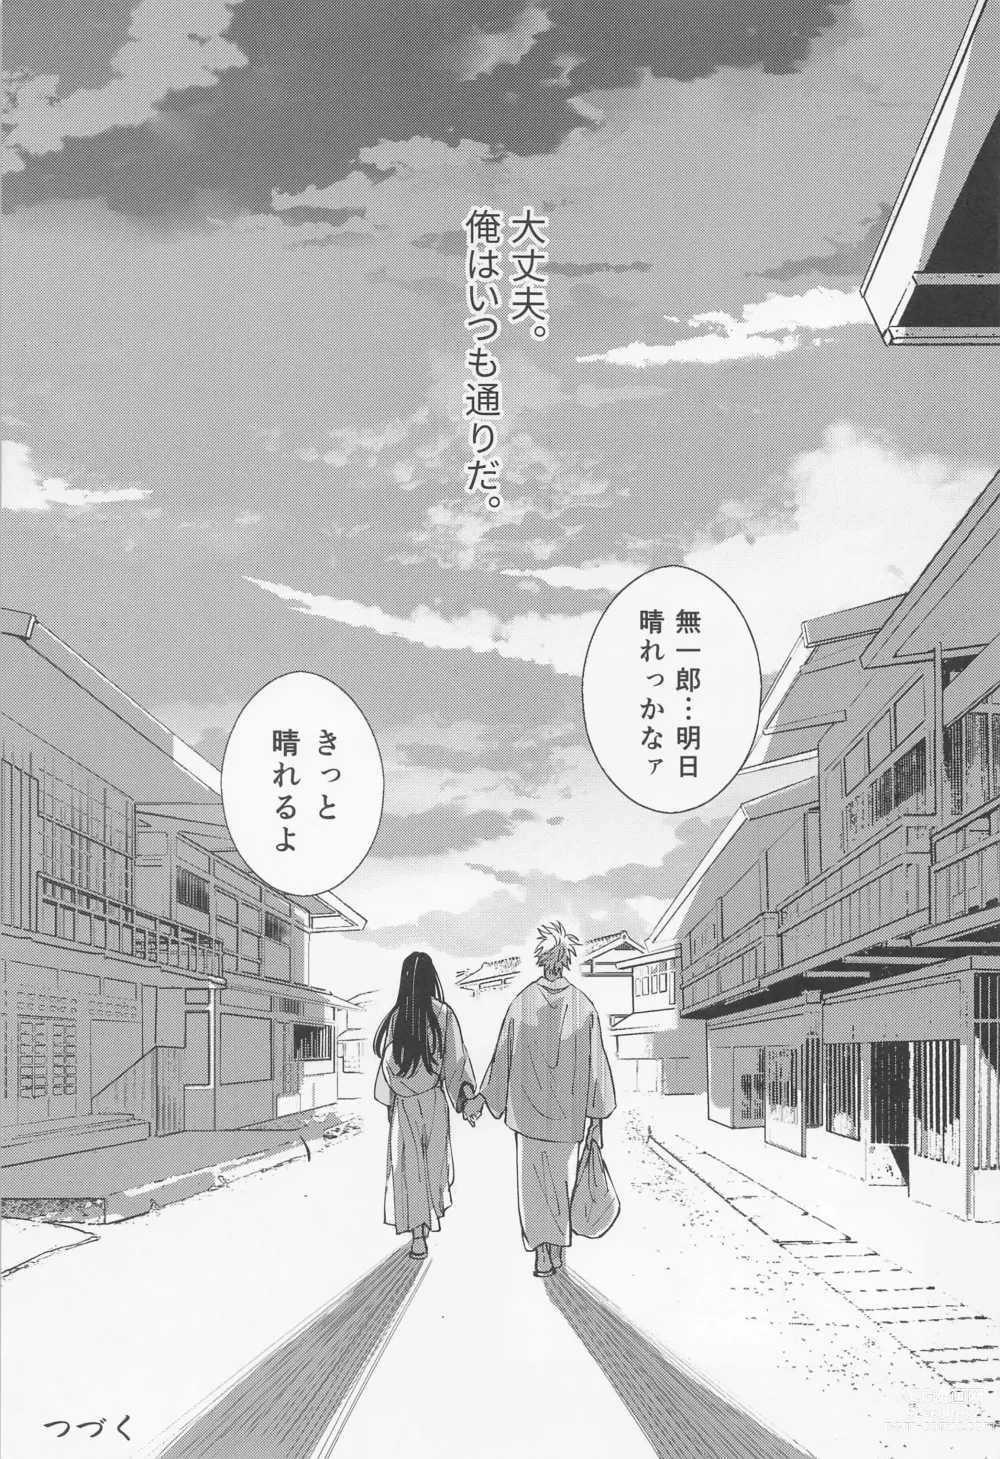 Page 58 of doujinshi Utakata  First volume